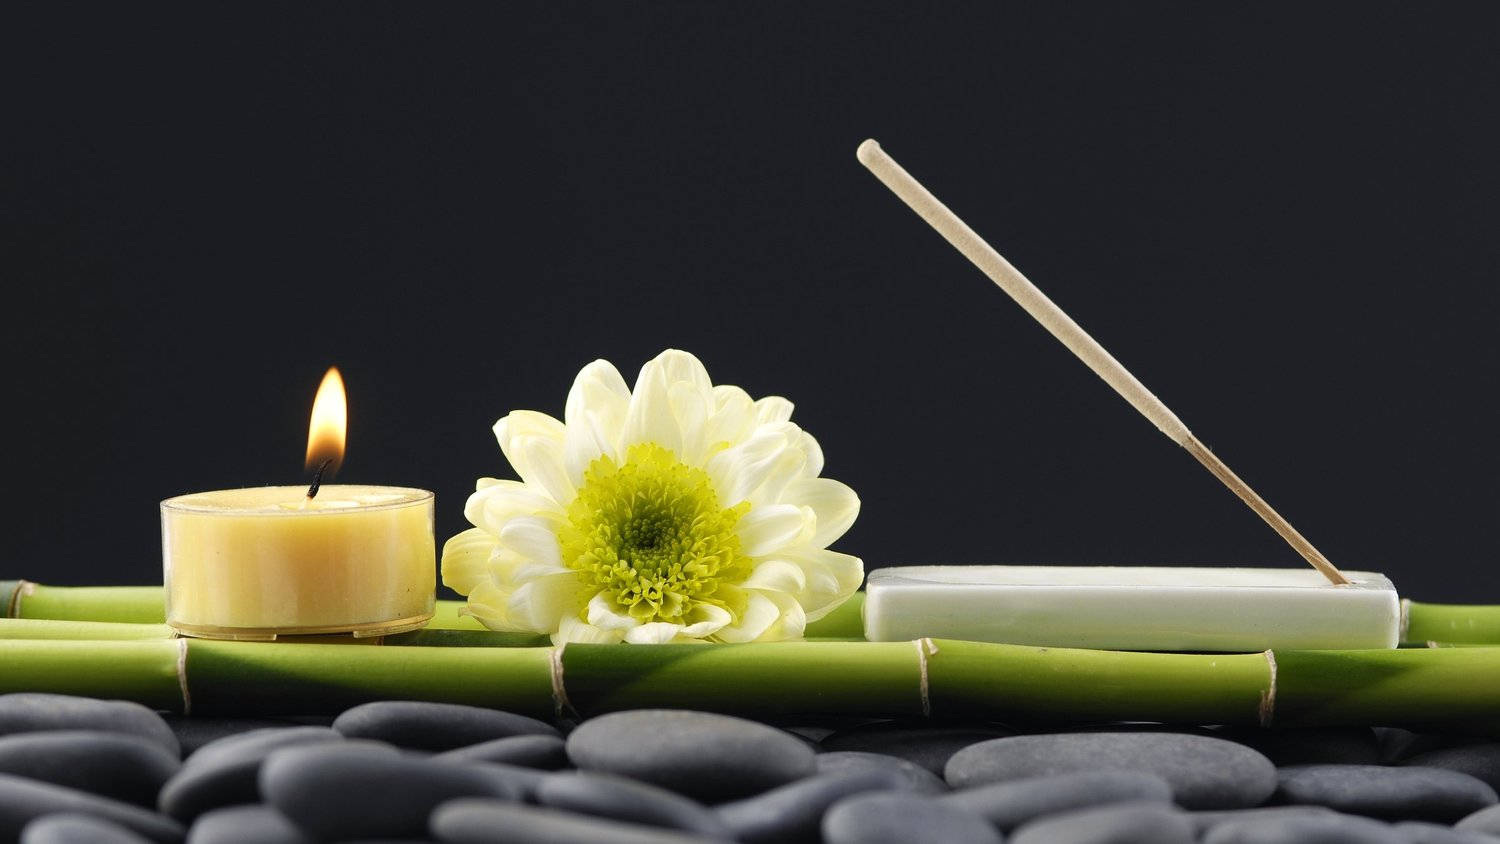 Bamboo 4k Chrysanthemum Candle Stones Massage Background